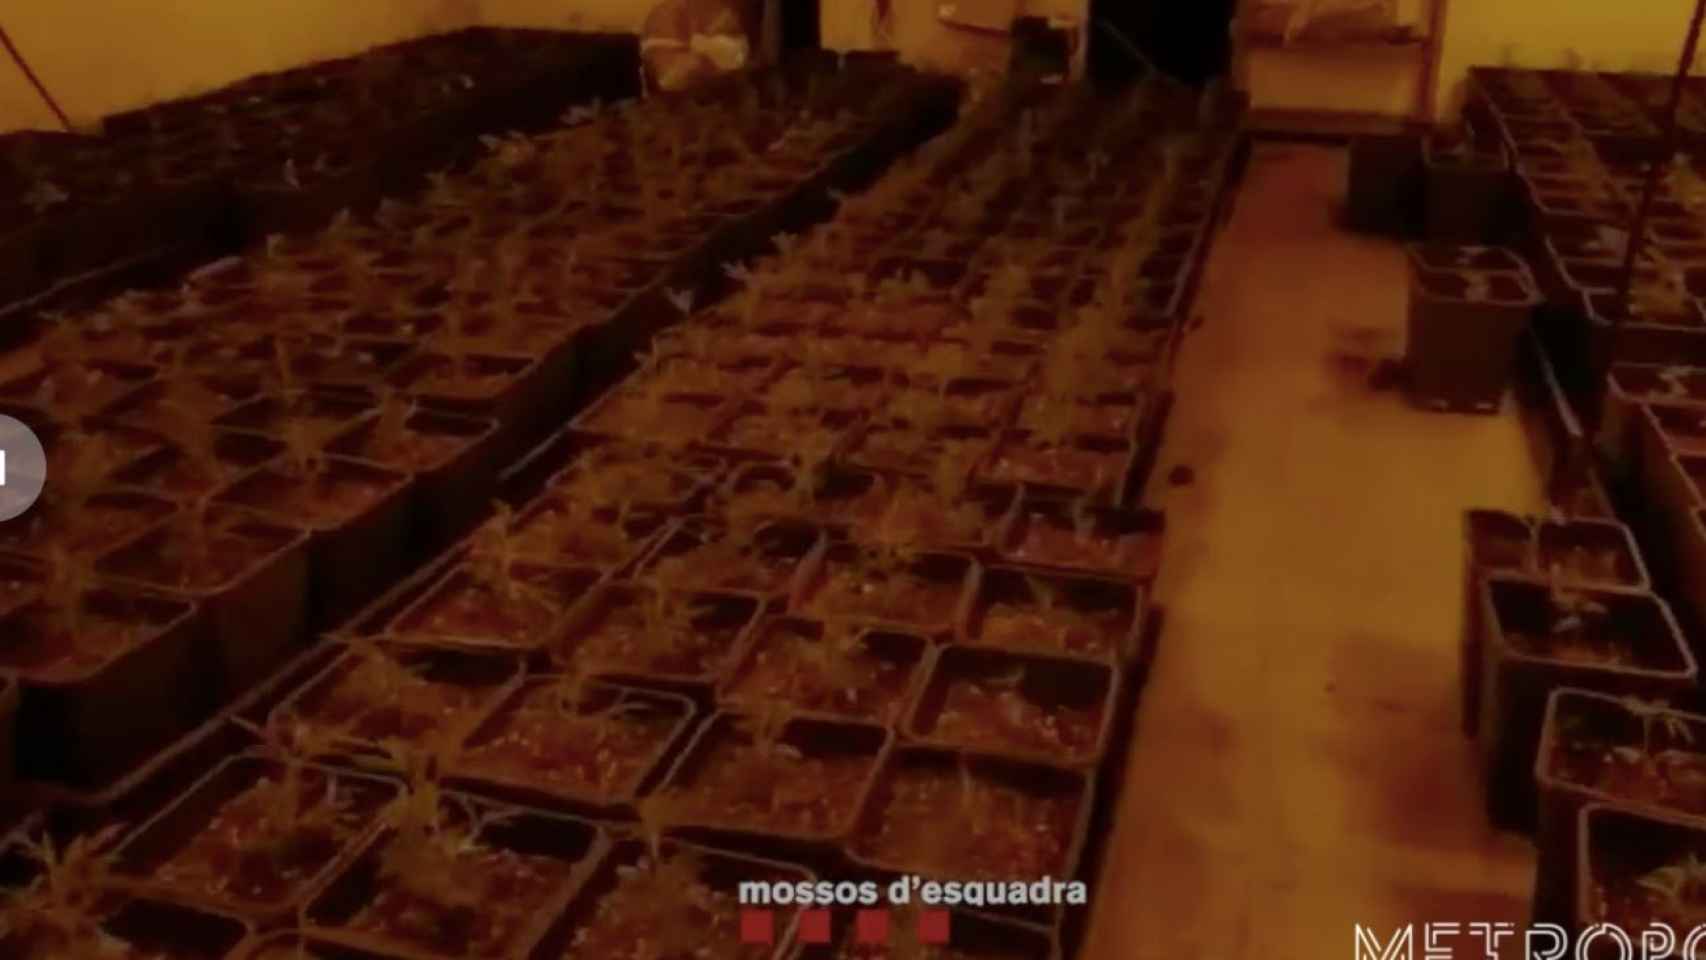 Plantación de marihuana desmantelada en Sant Martí / MOSSOS